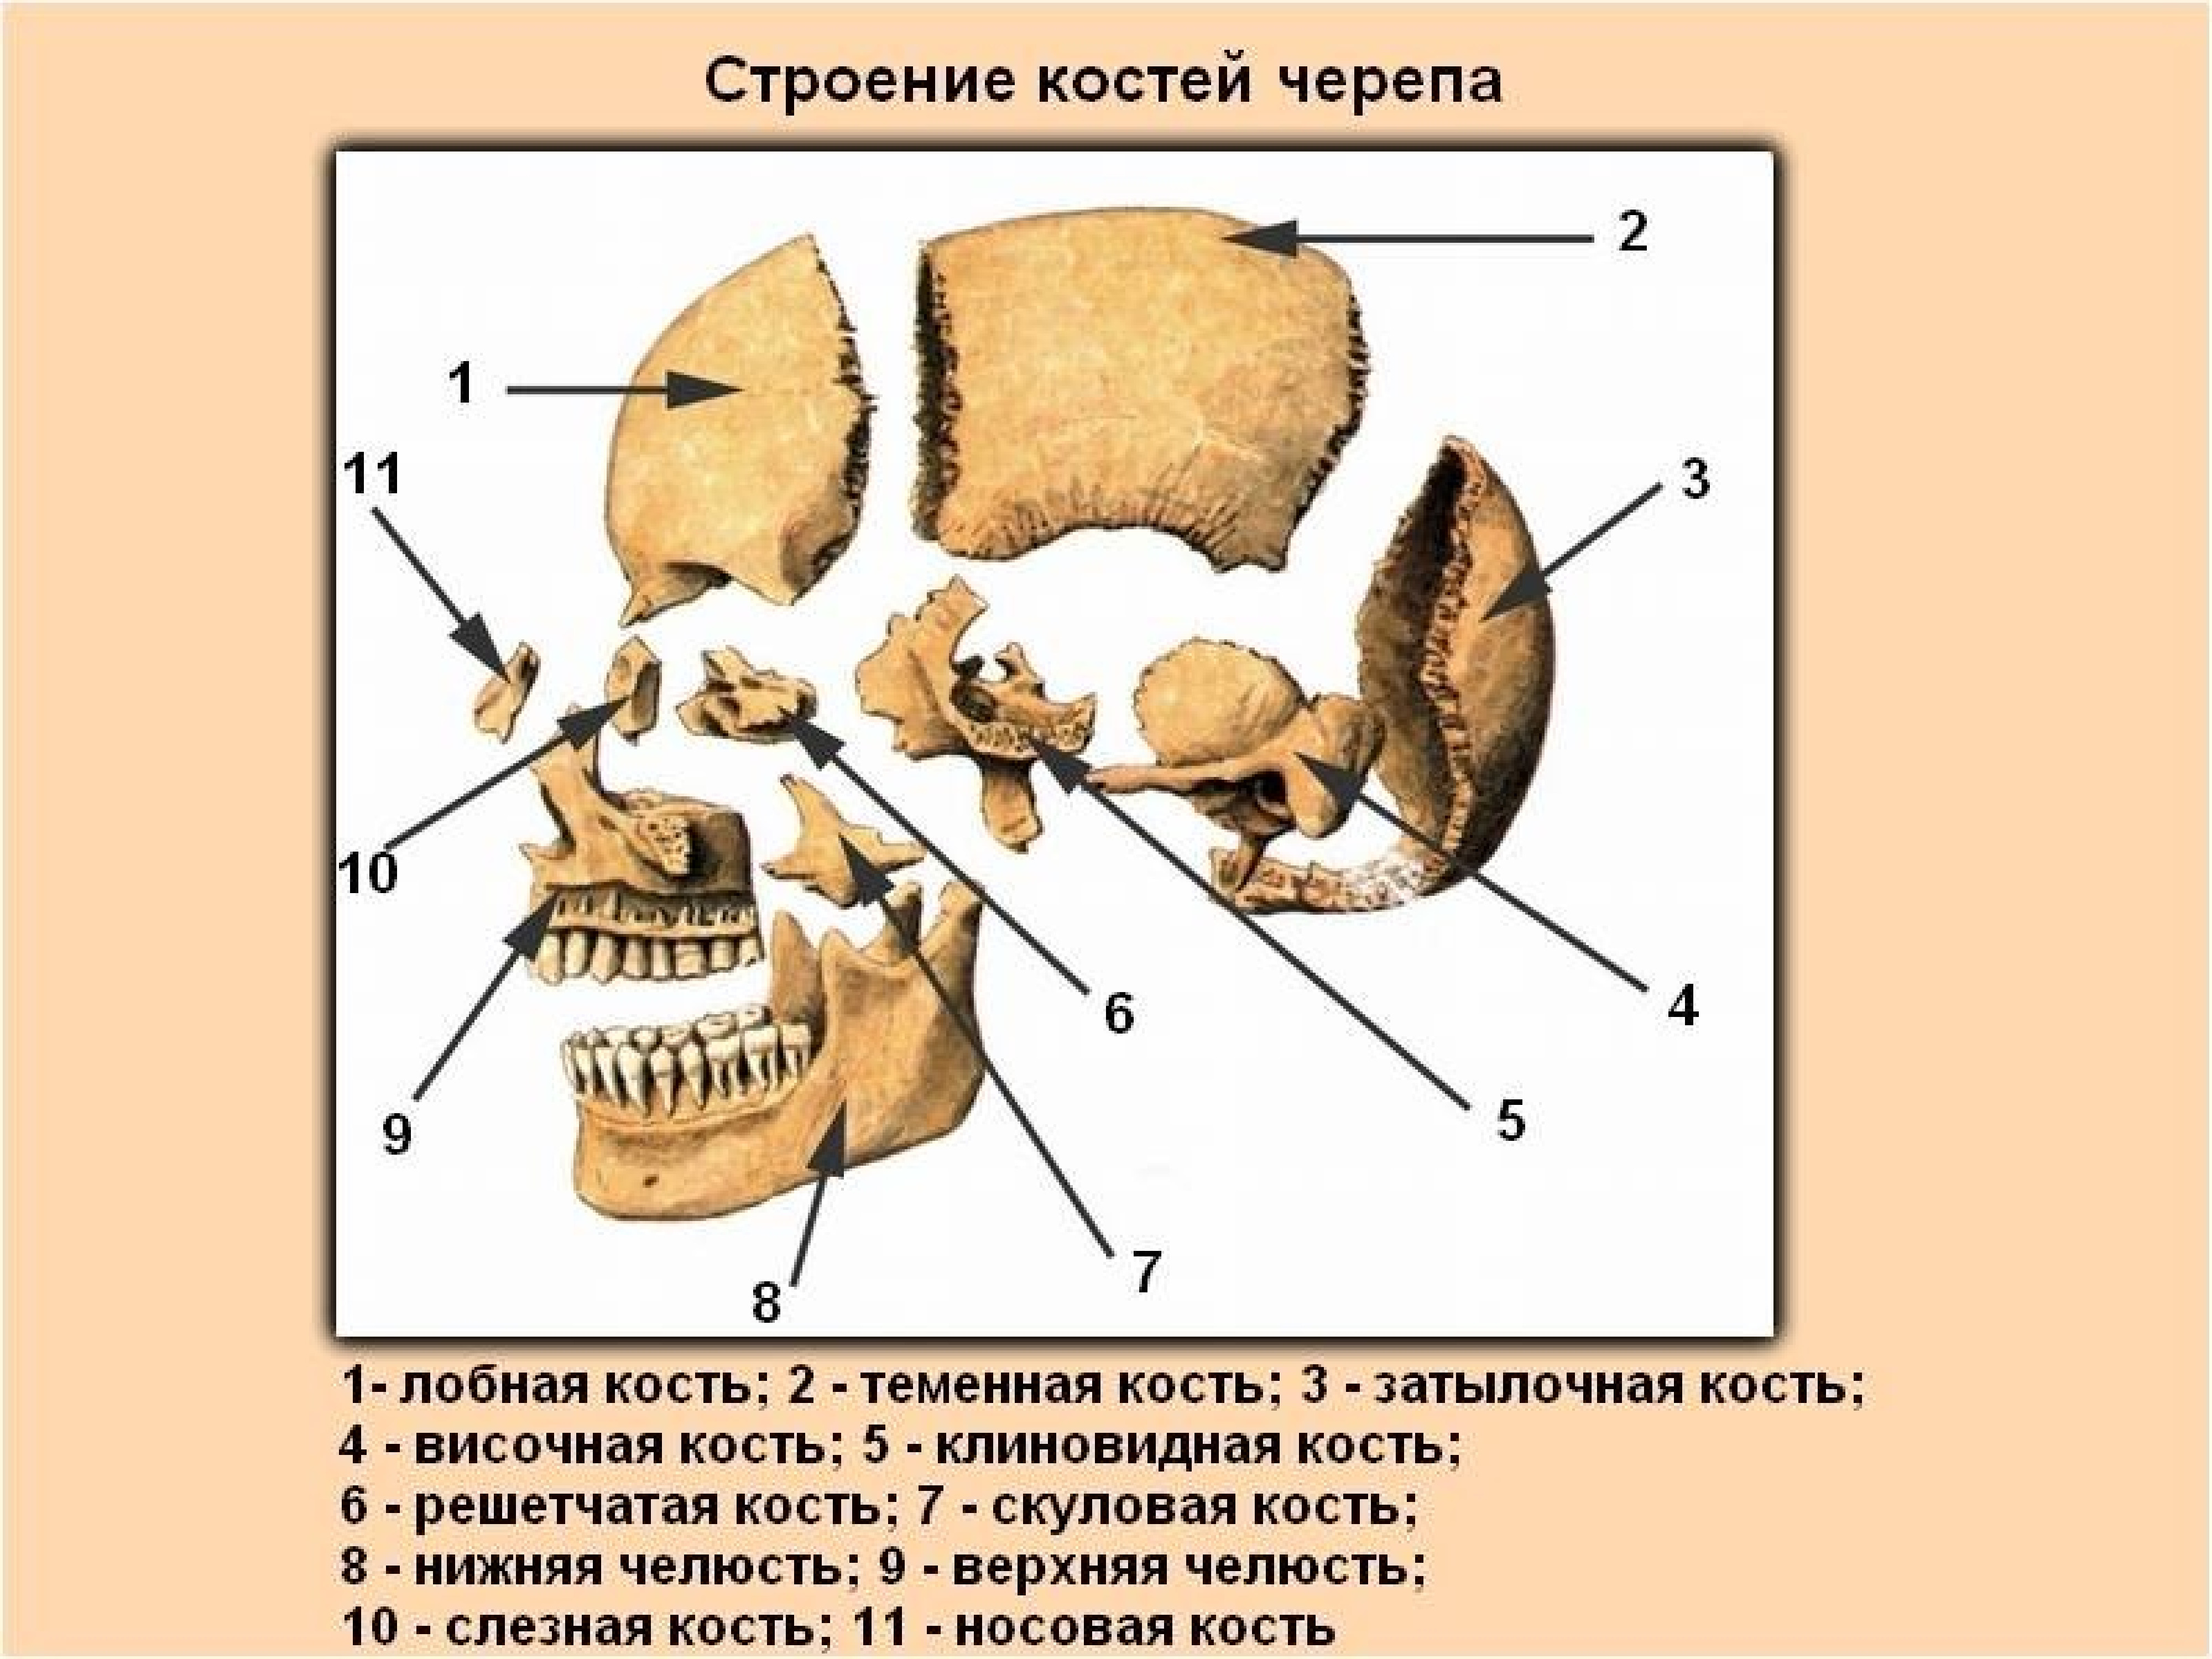 Лобная отдел скелета. Строение кости черепа человека. Строение костей черепа человека анатомия. Строение костей головы человека. Череп человека с названием костей.